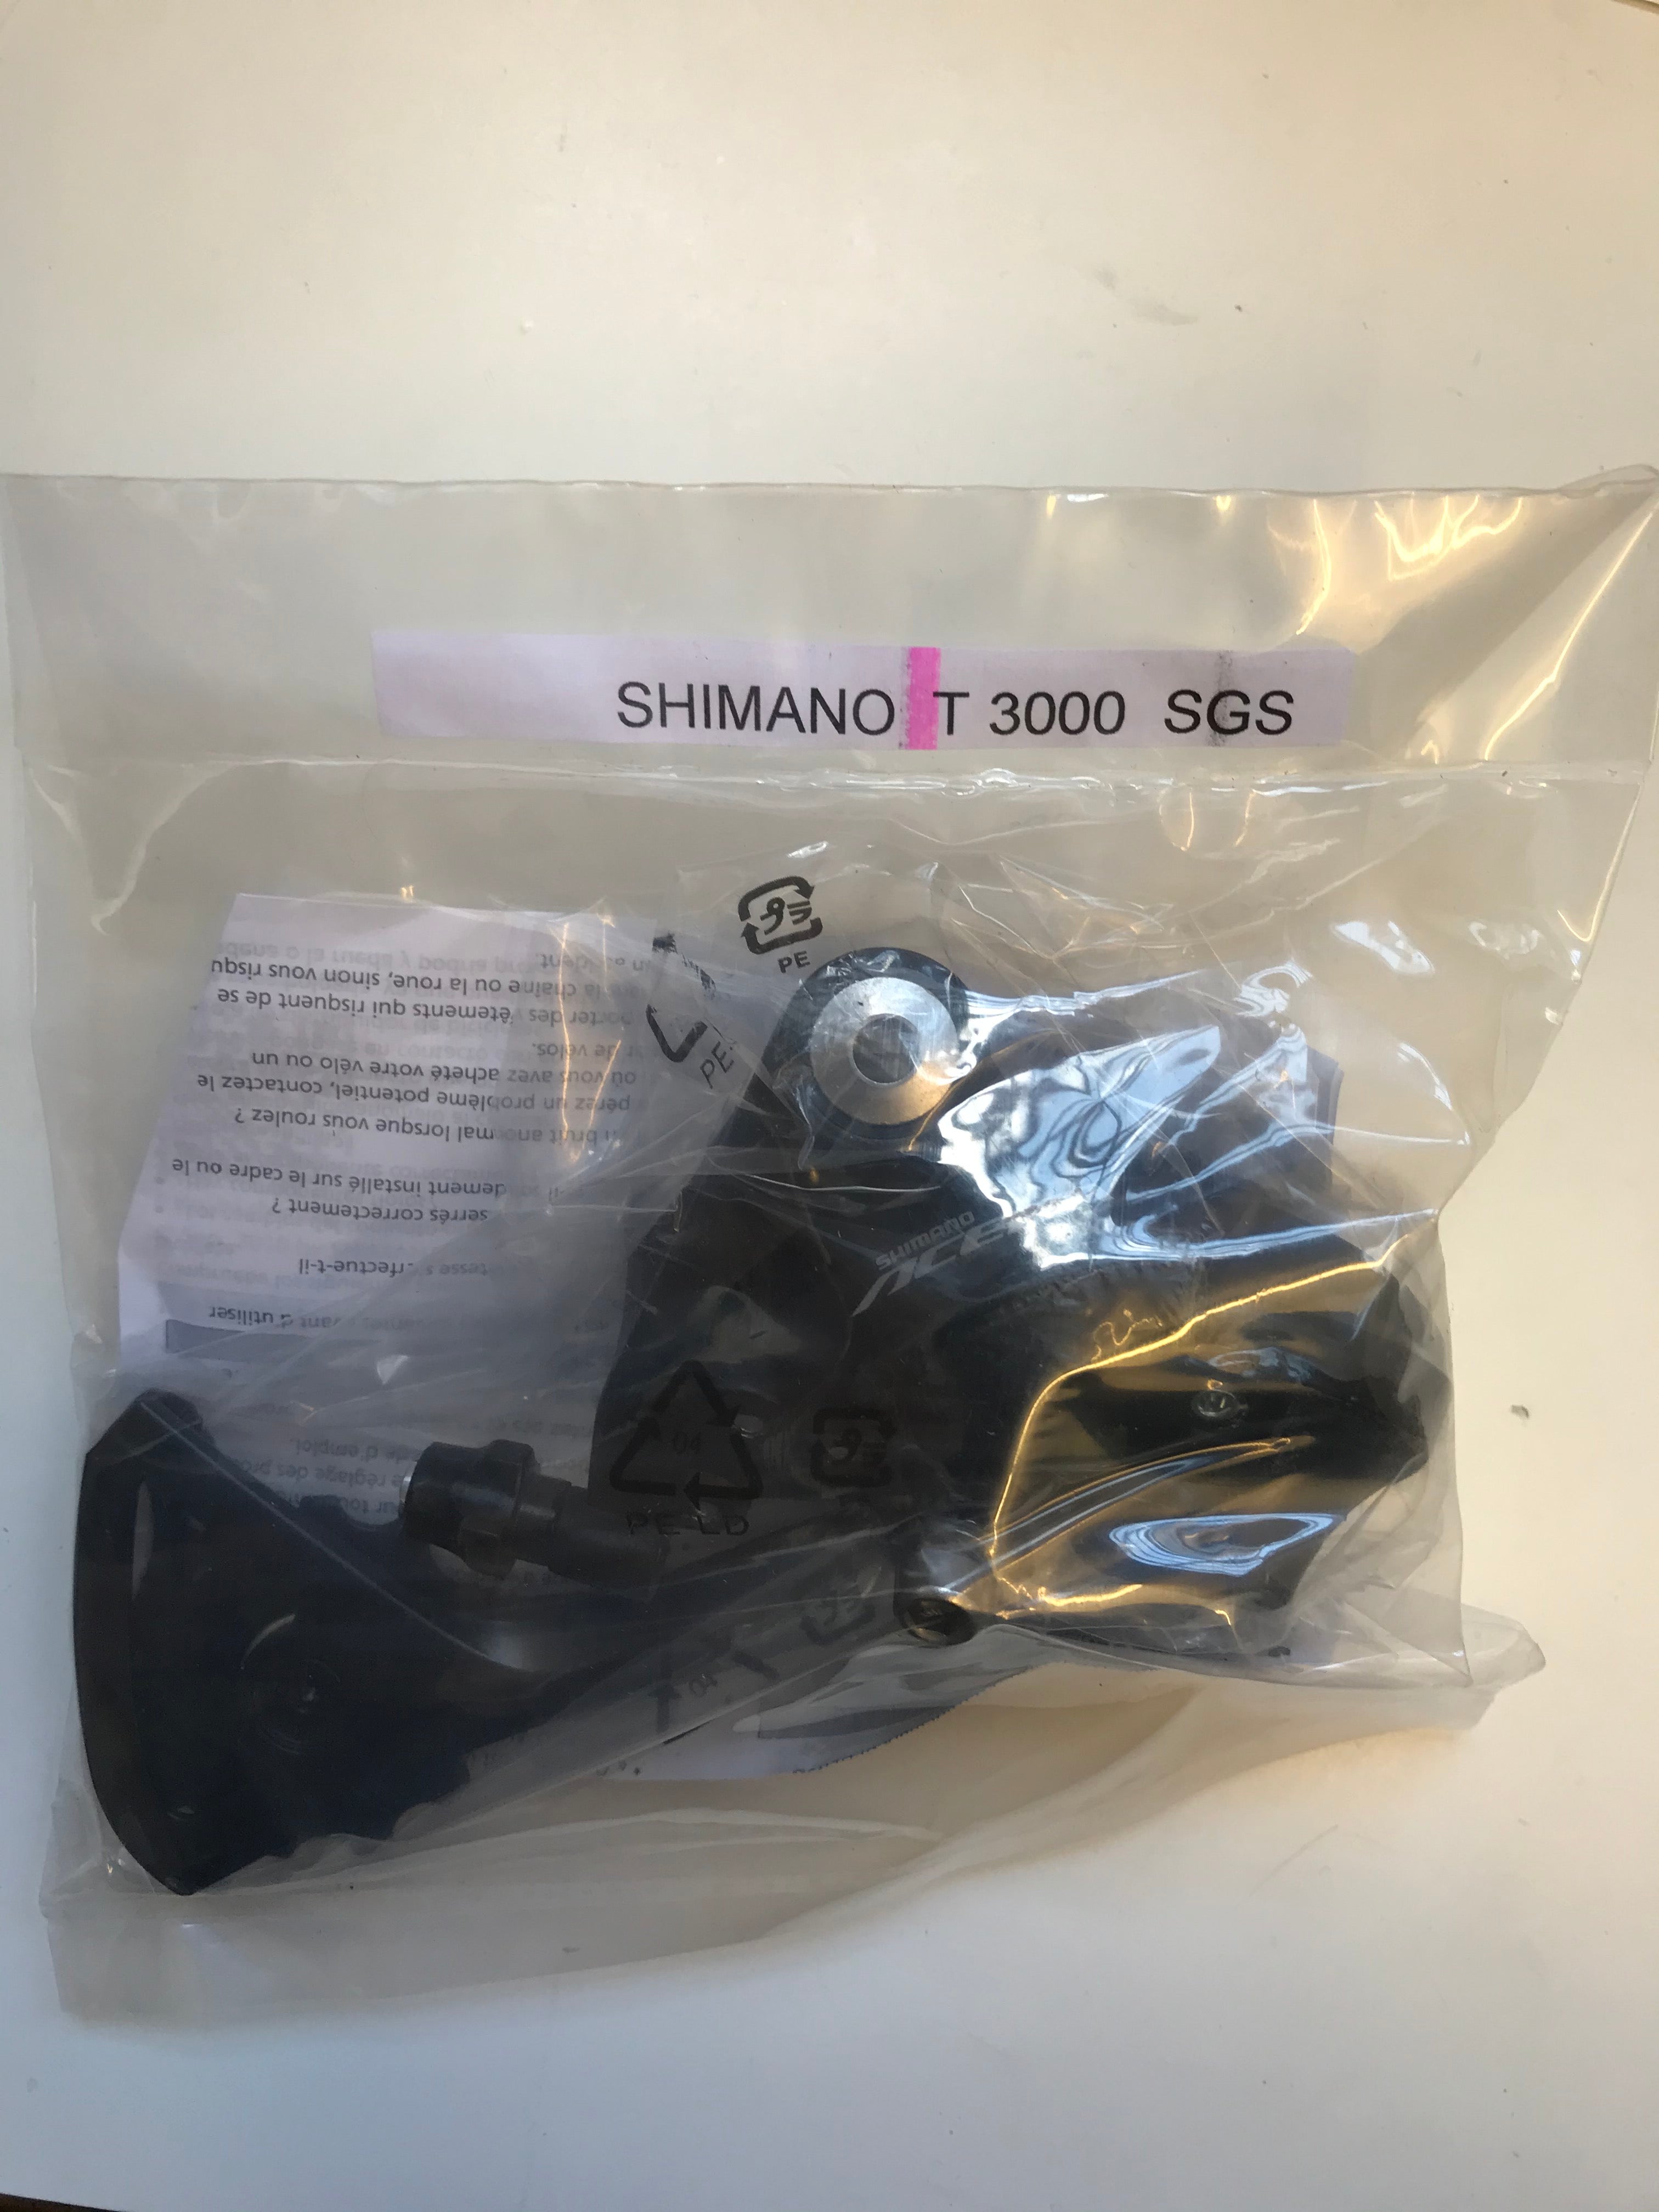 Shimano Acera SGS T3000 9 Speed Rear Derailleur